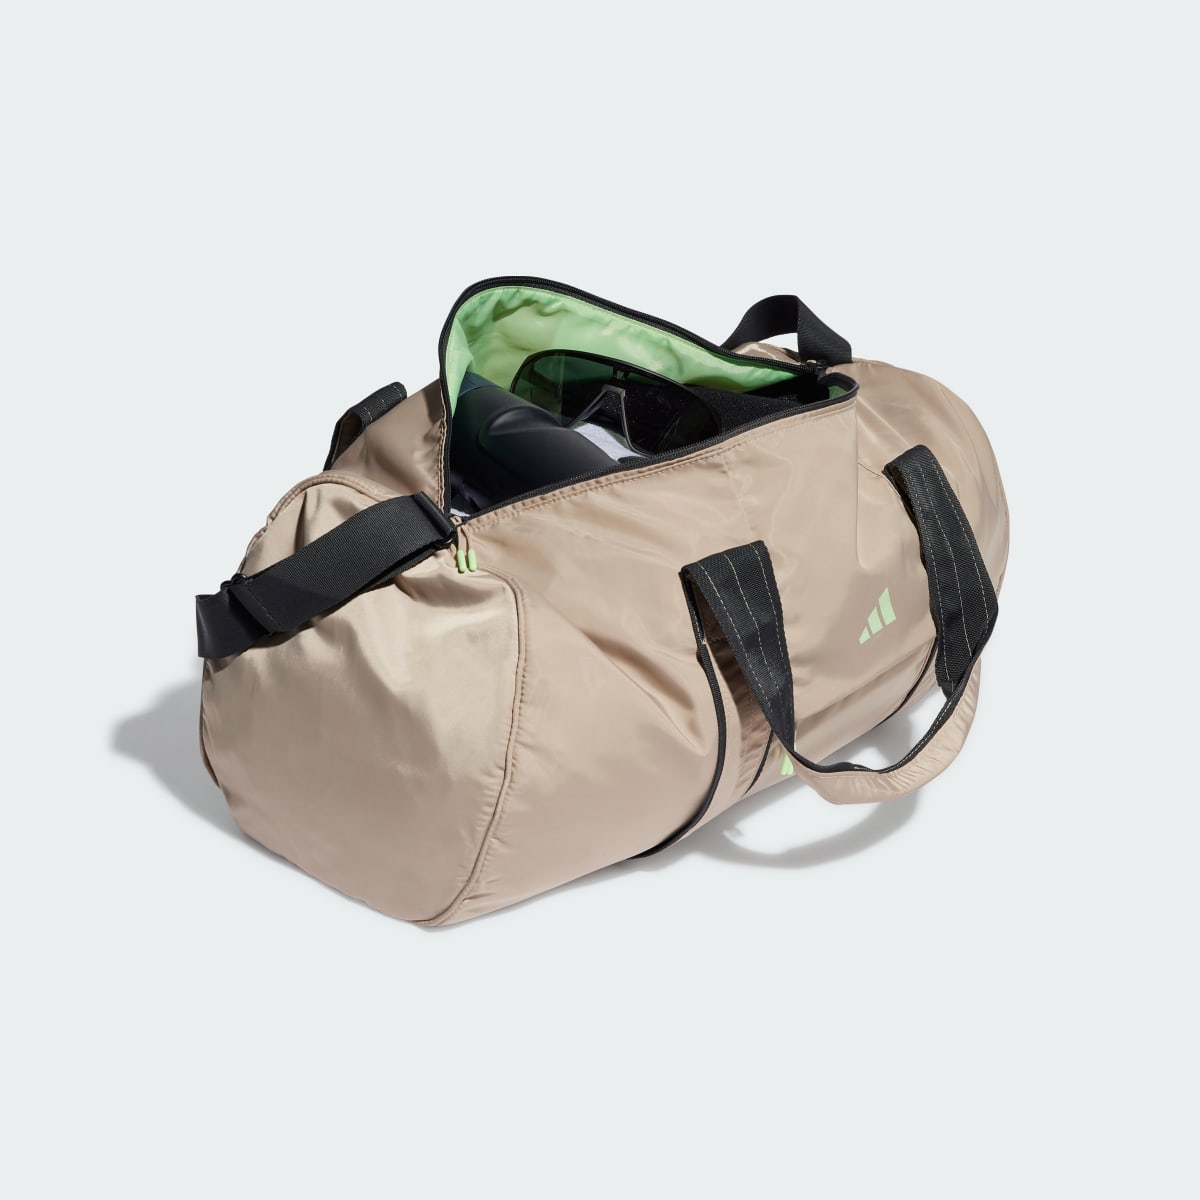 Adidas Yoga Duffel Bag. 5